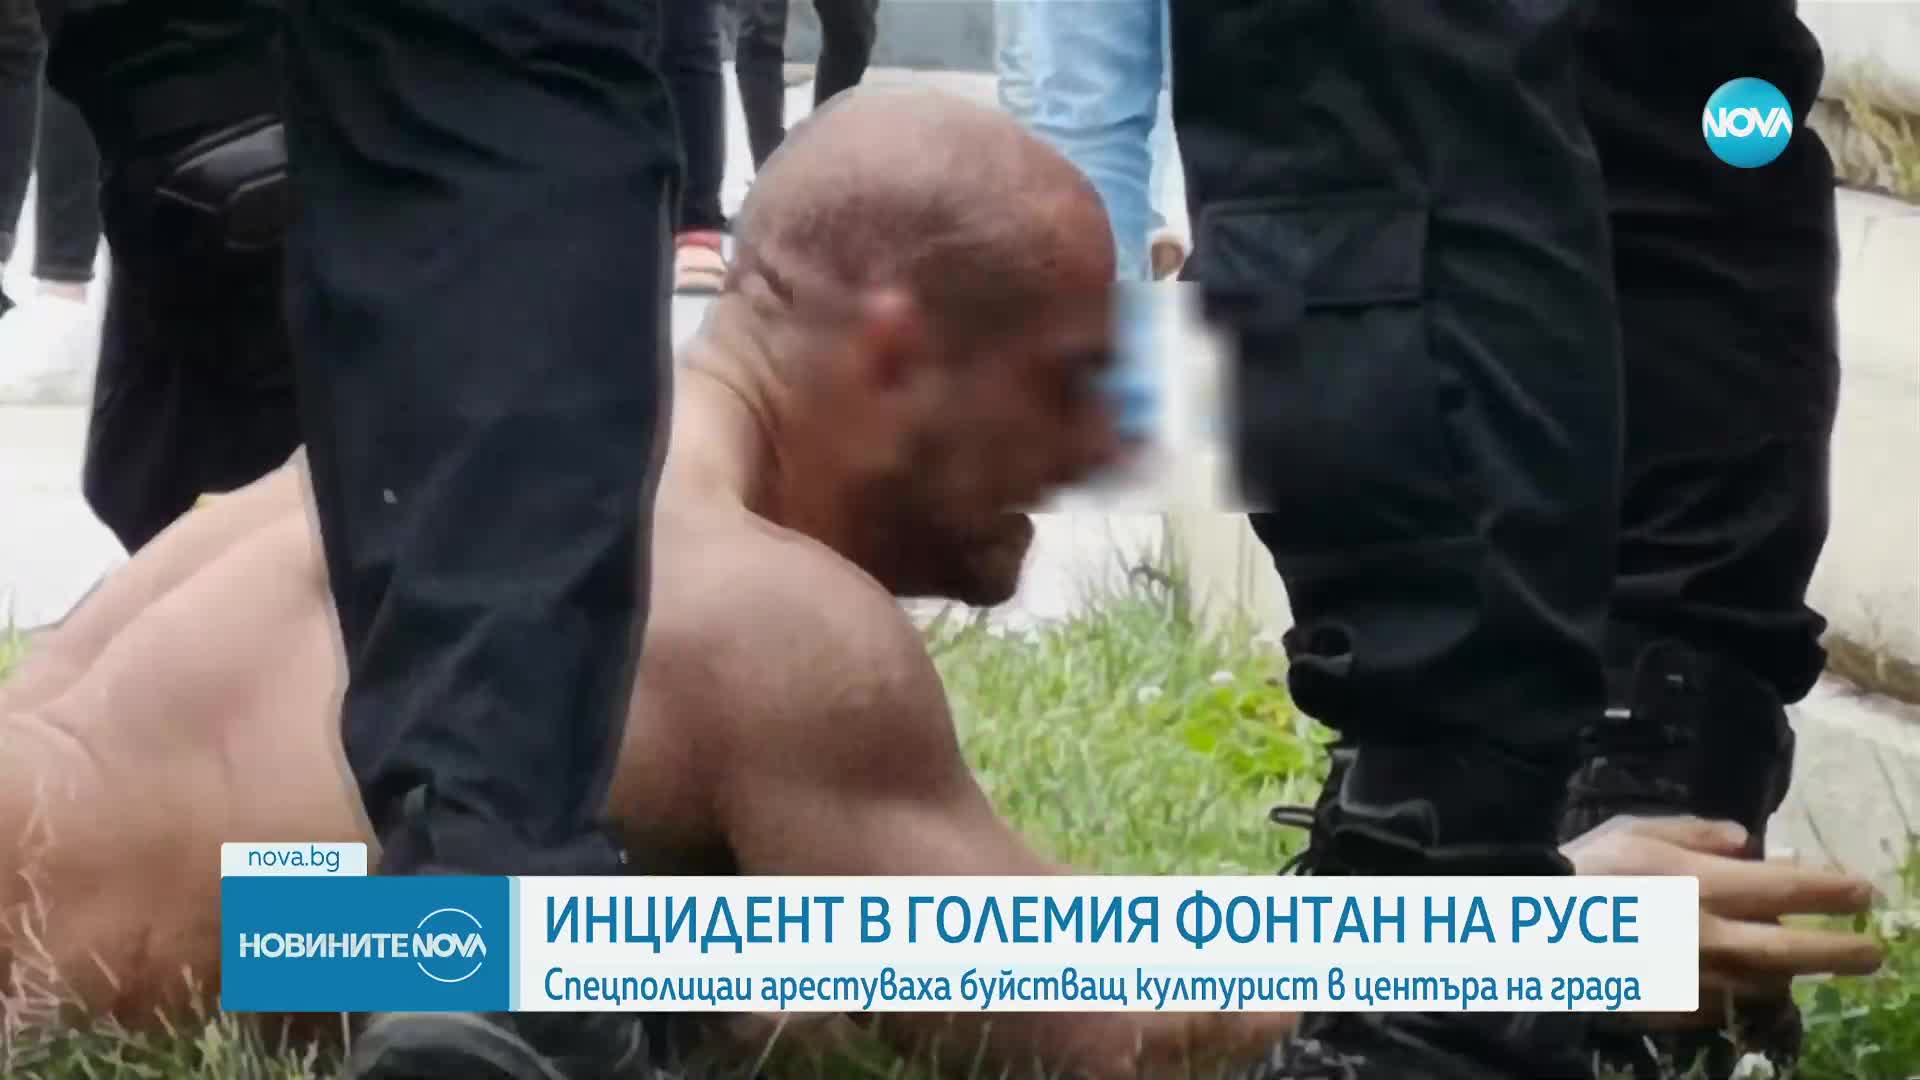 Обезвредиха буйстващ културист в центъра на Русе